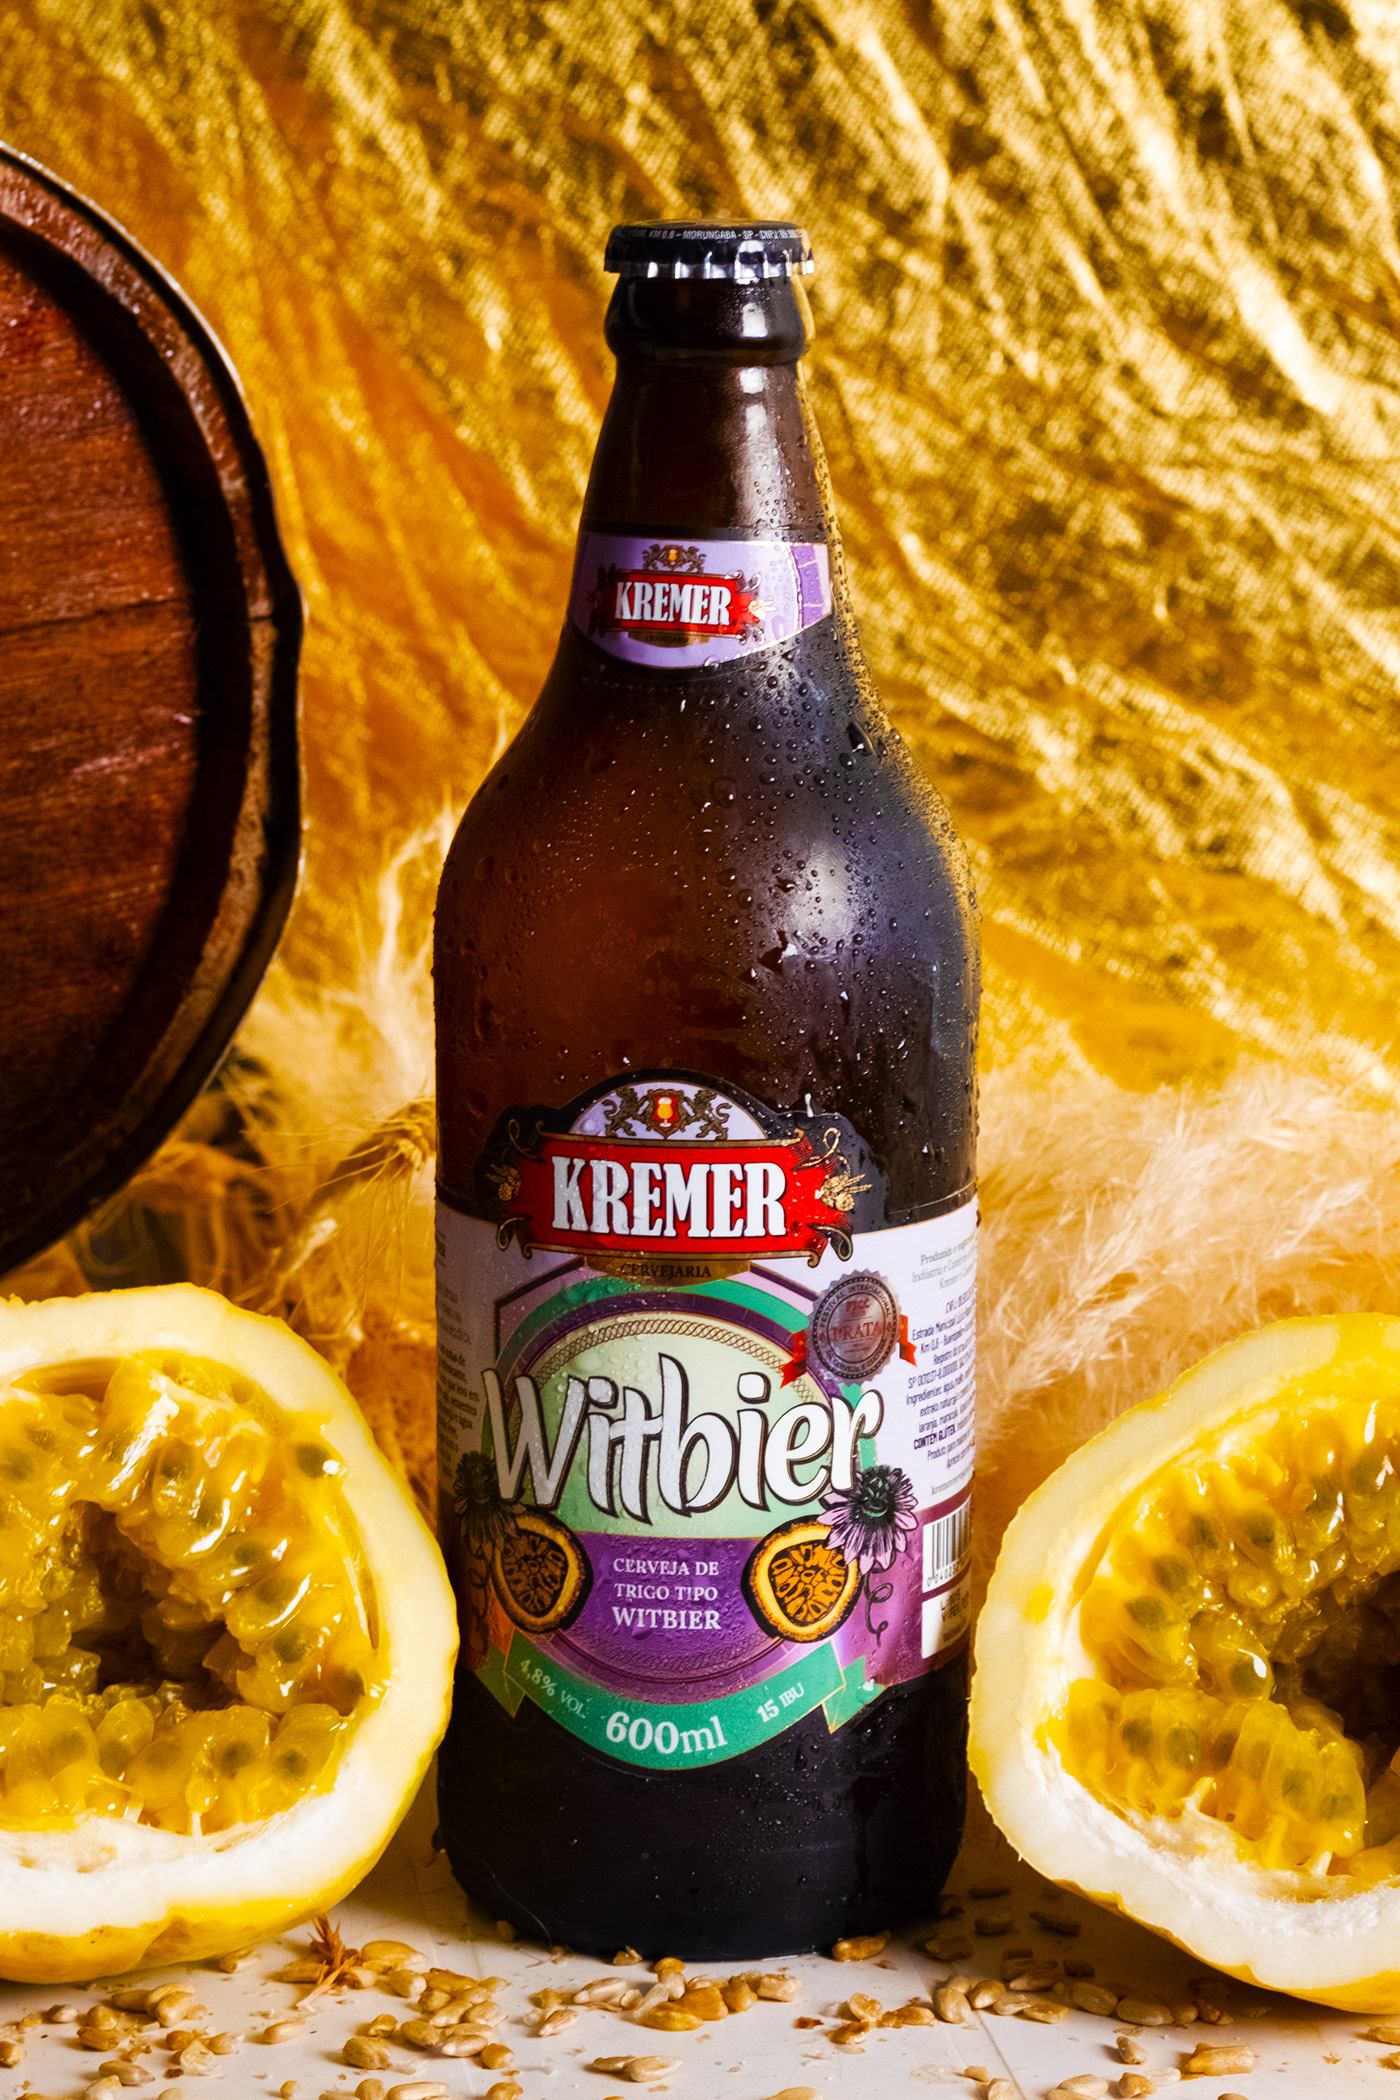 advertise bebidaalcoolica Bier Cerveja drink publicidade witbier